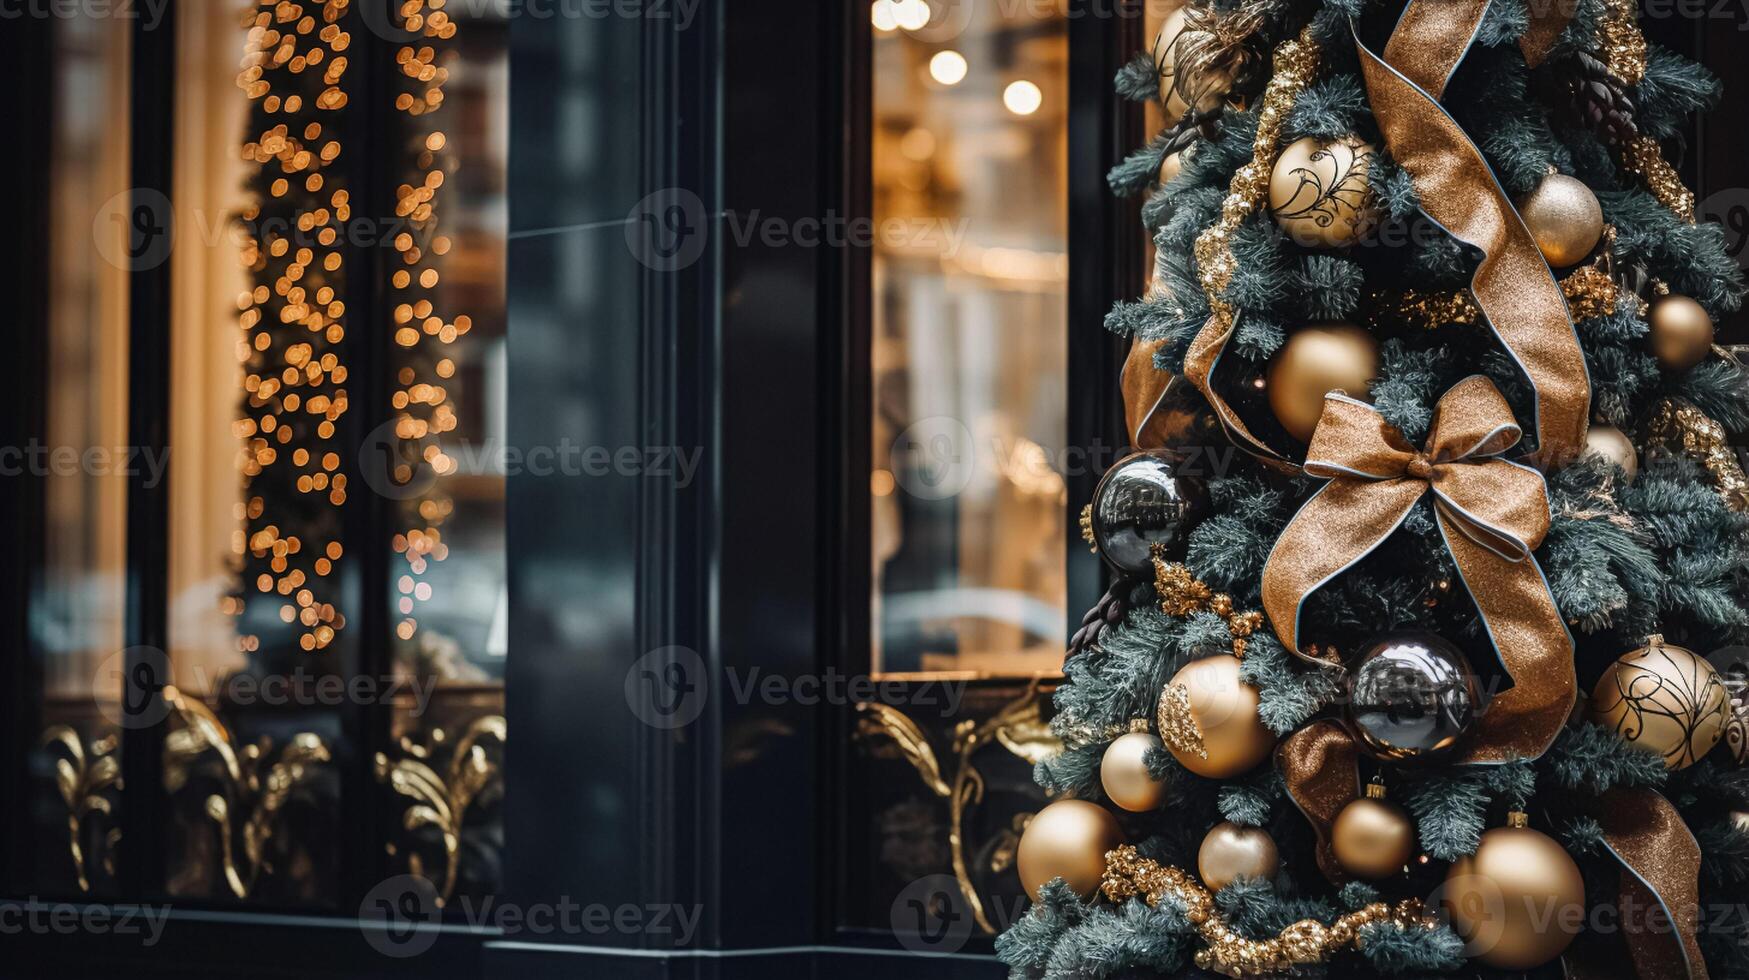 ai gerado Natal decoração detalhes em Inglês estilizado luxo Alto rua cidade loja porta ou compras janela mostrar, feriado venda e fazer compras decoração foto